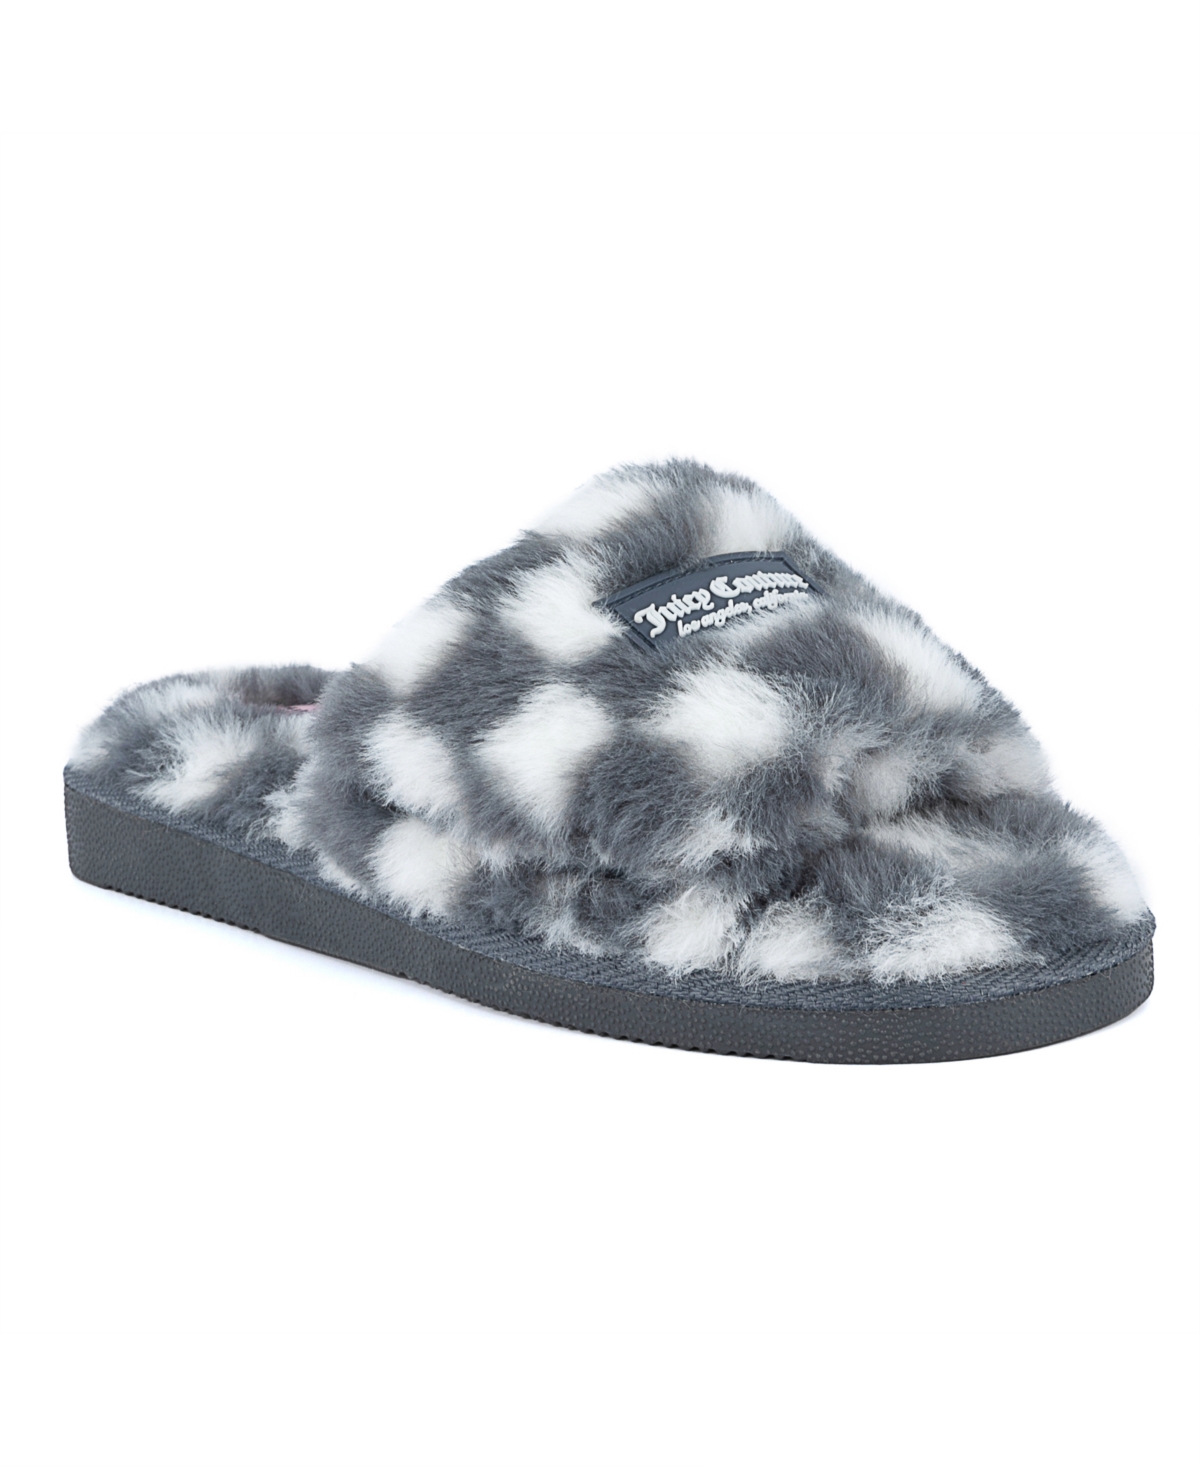 Women's Hiero Slip-On Checkered Slippers - Gray